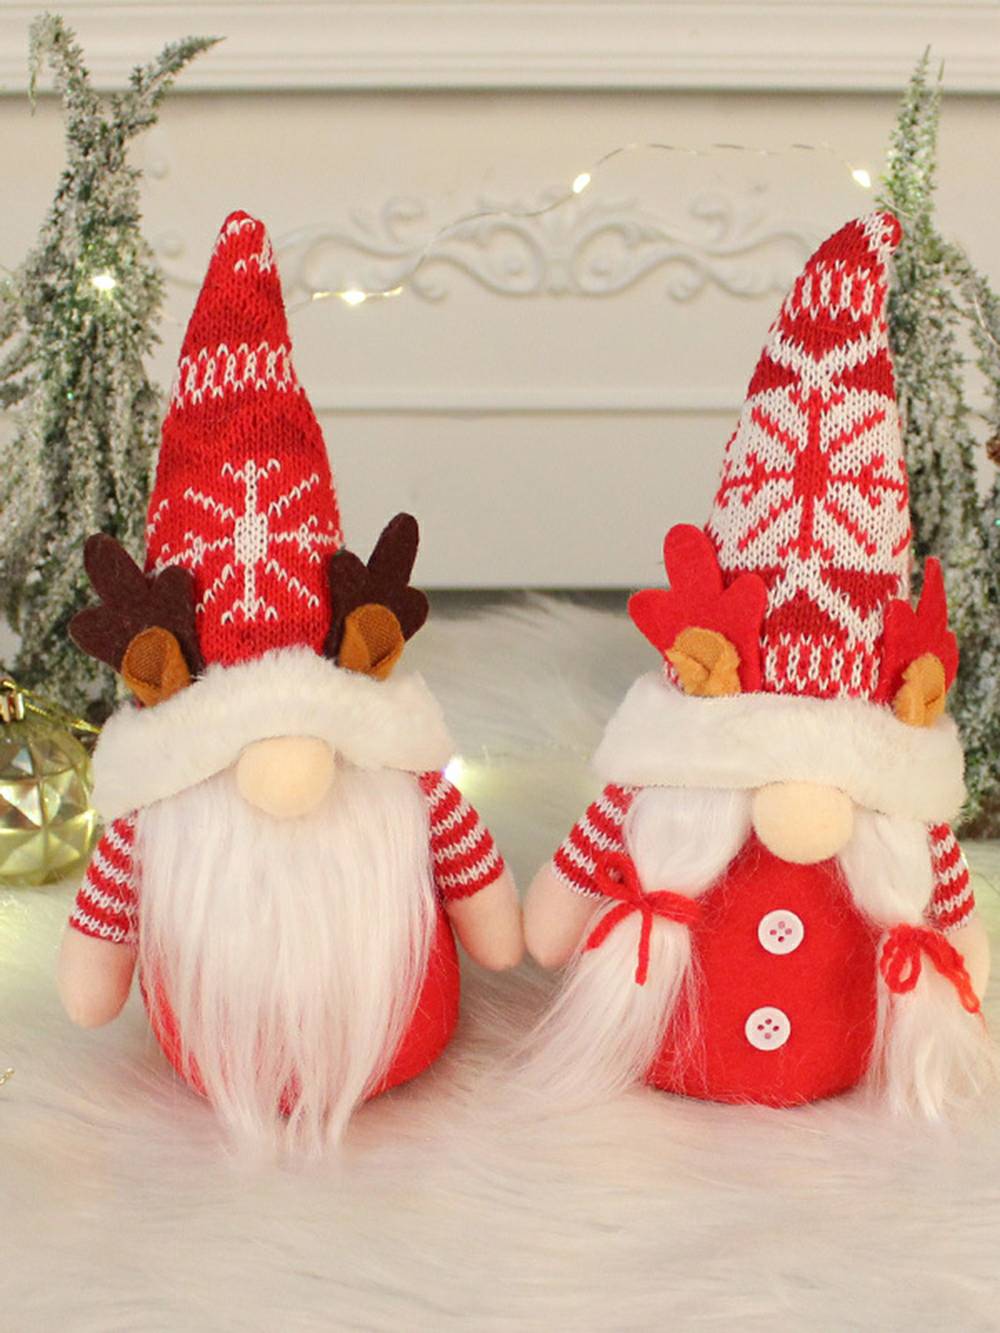 クリスマスぬいぐるみエルフ装飾: 枝角付きの三つ編みとひげを生やしたカップル人形